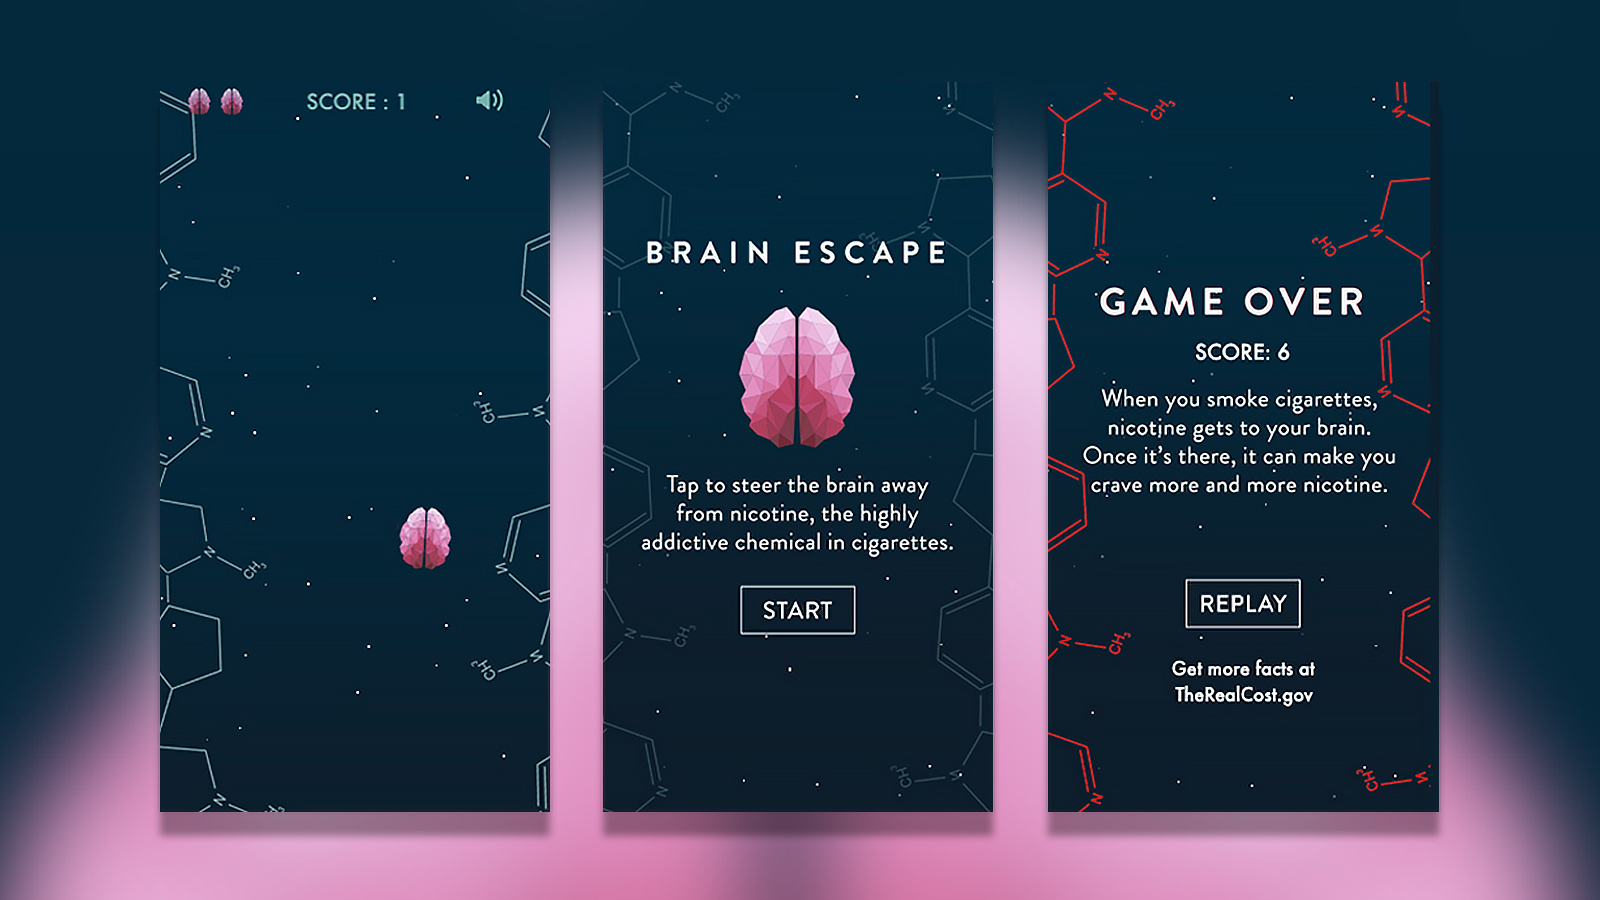 Brain Escape game